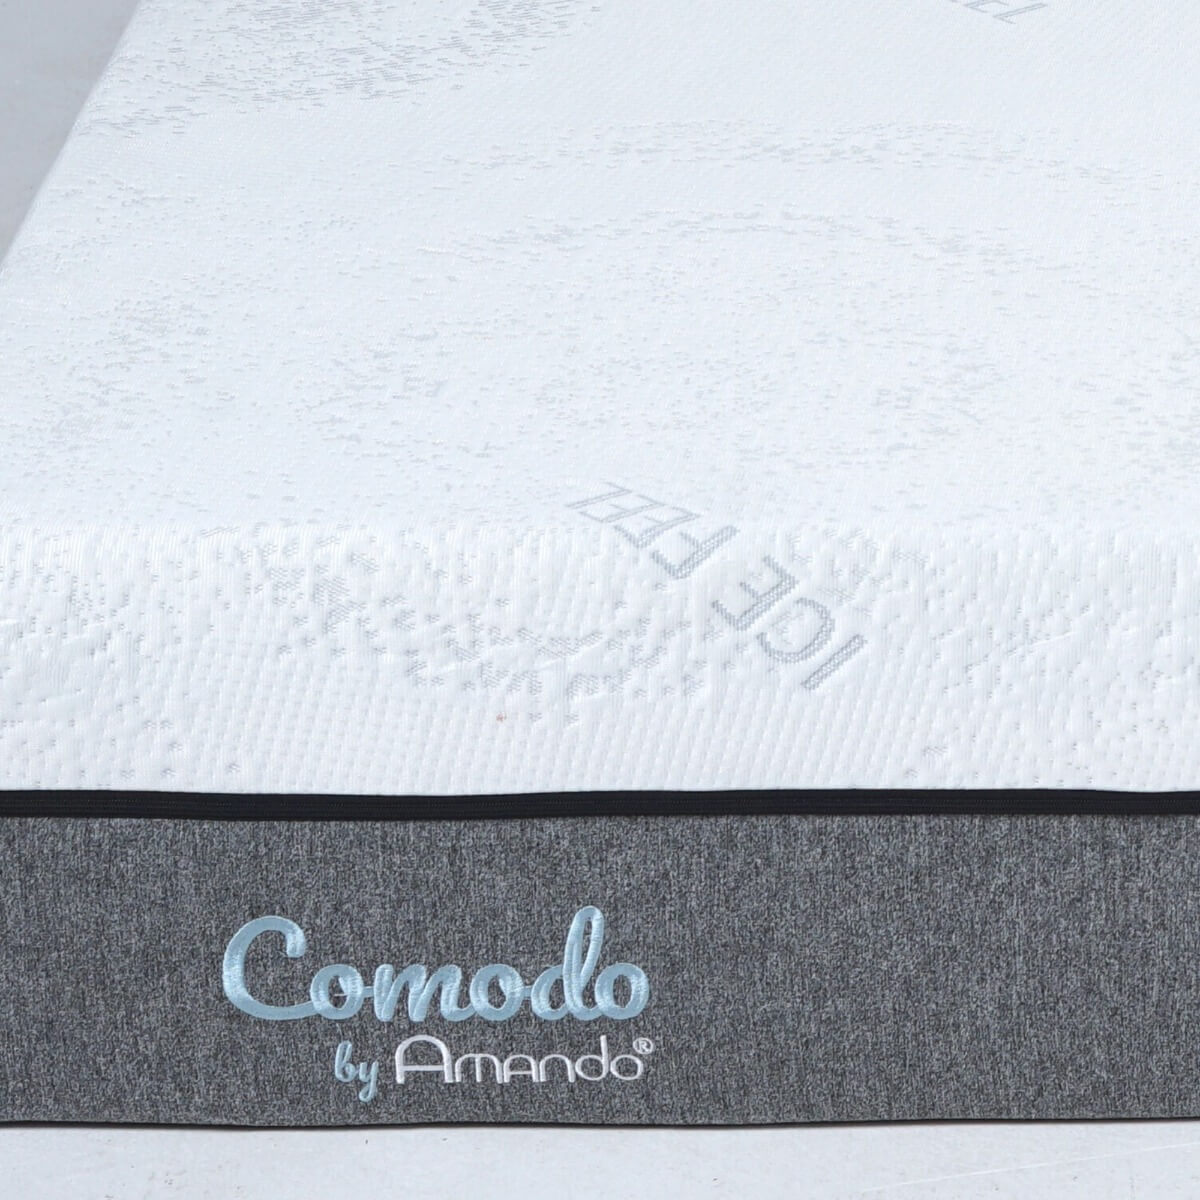 Nệm Foam Amando Comodo Luxury đã áp dụng những công nghệ tiên tiến, hiện đại bậc nhất vào quá trình sản xuất 